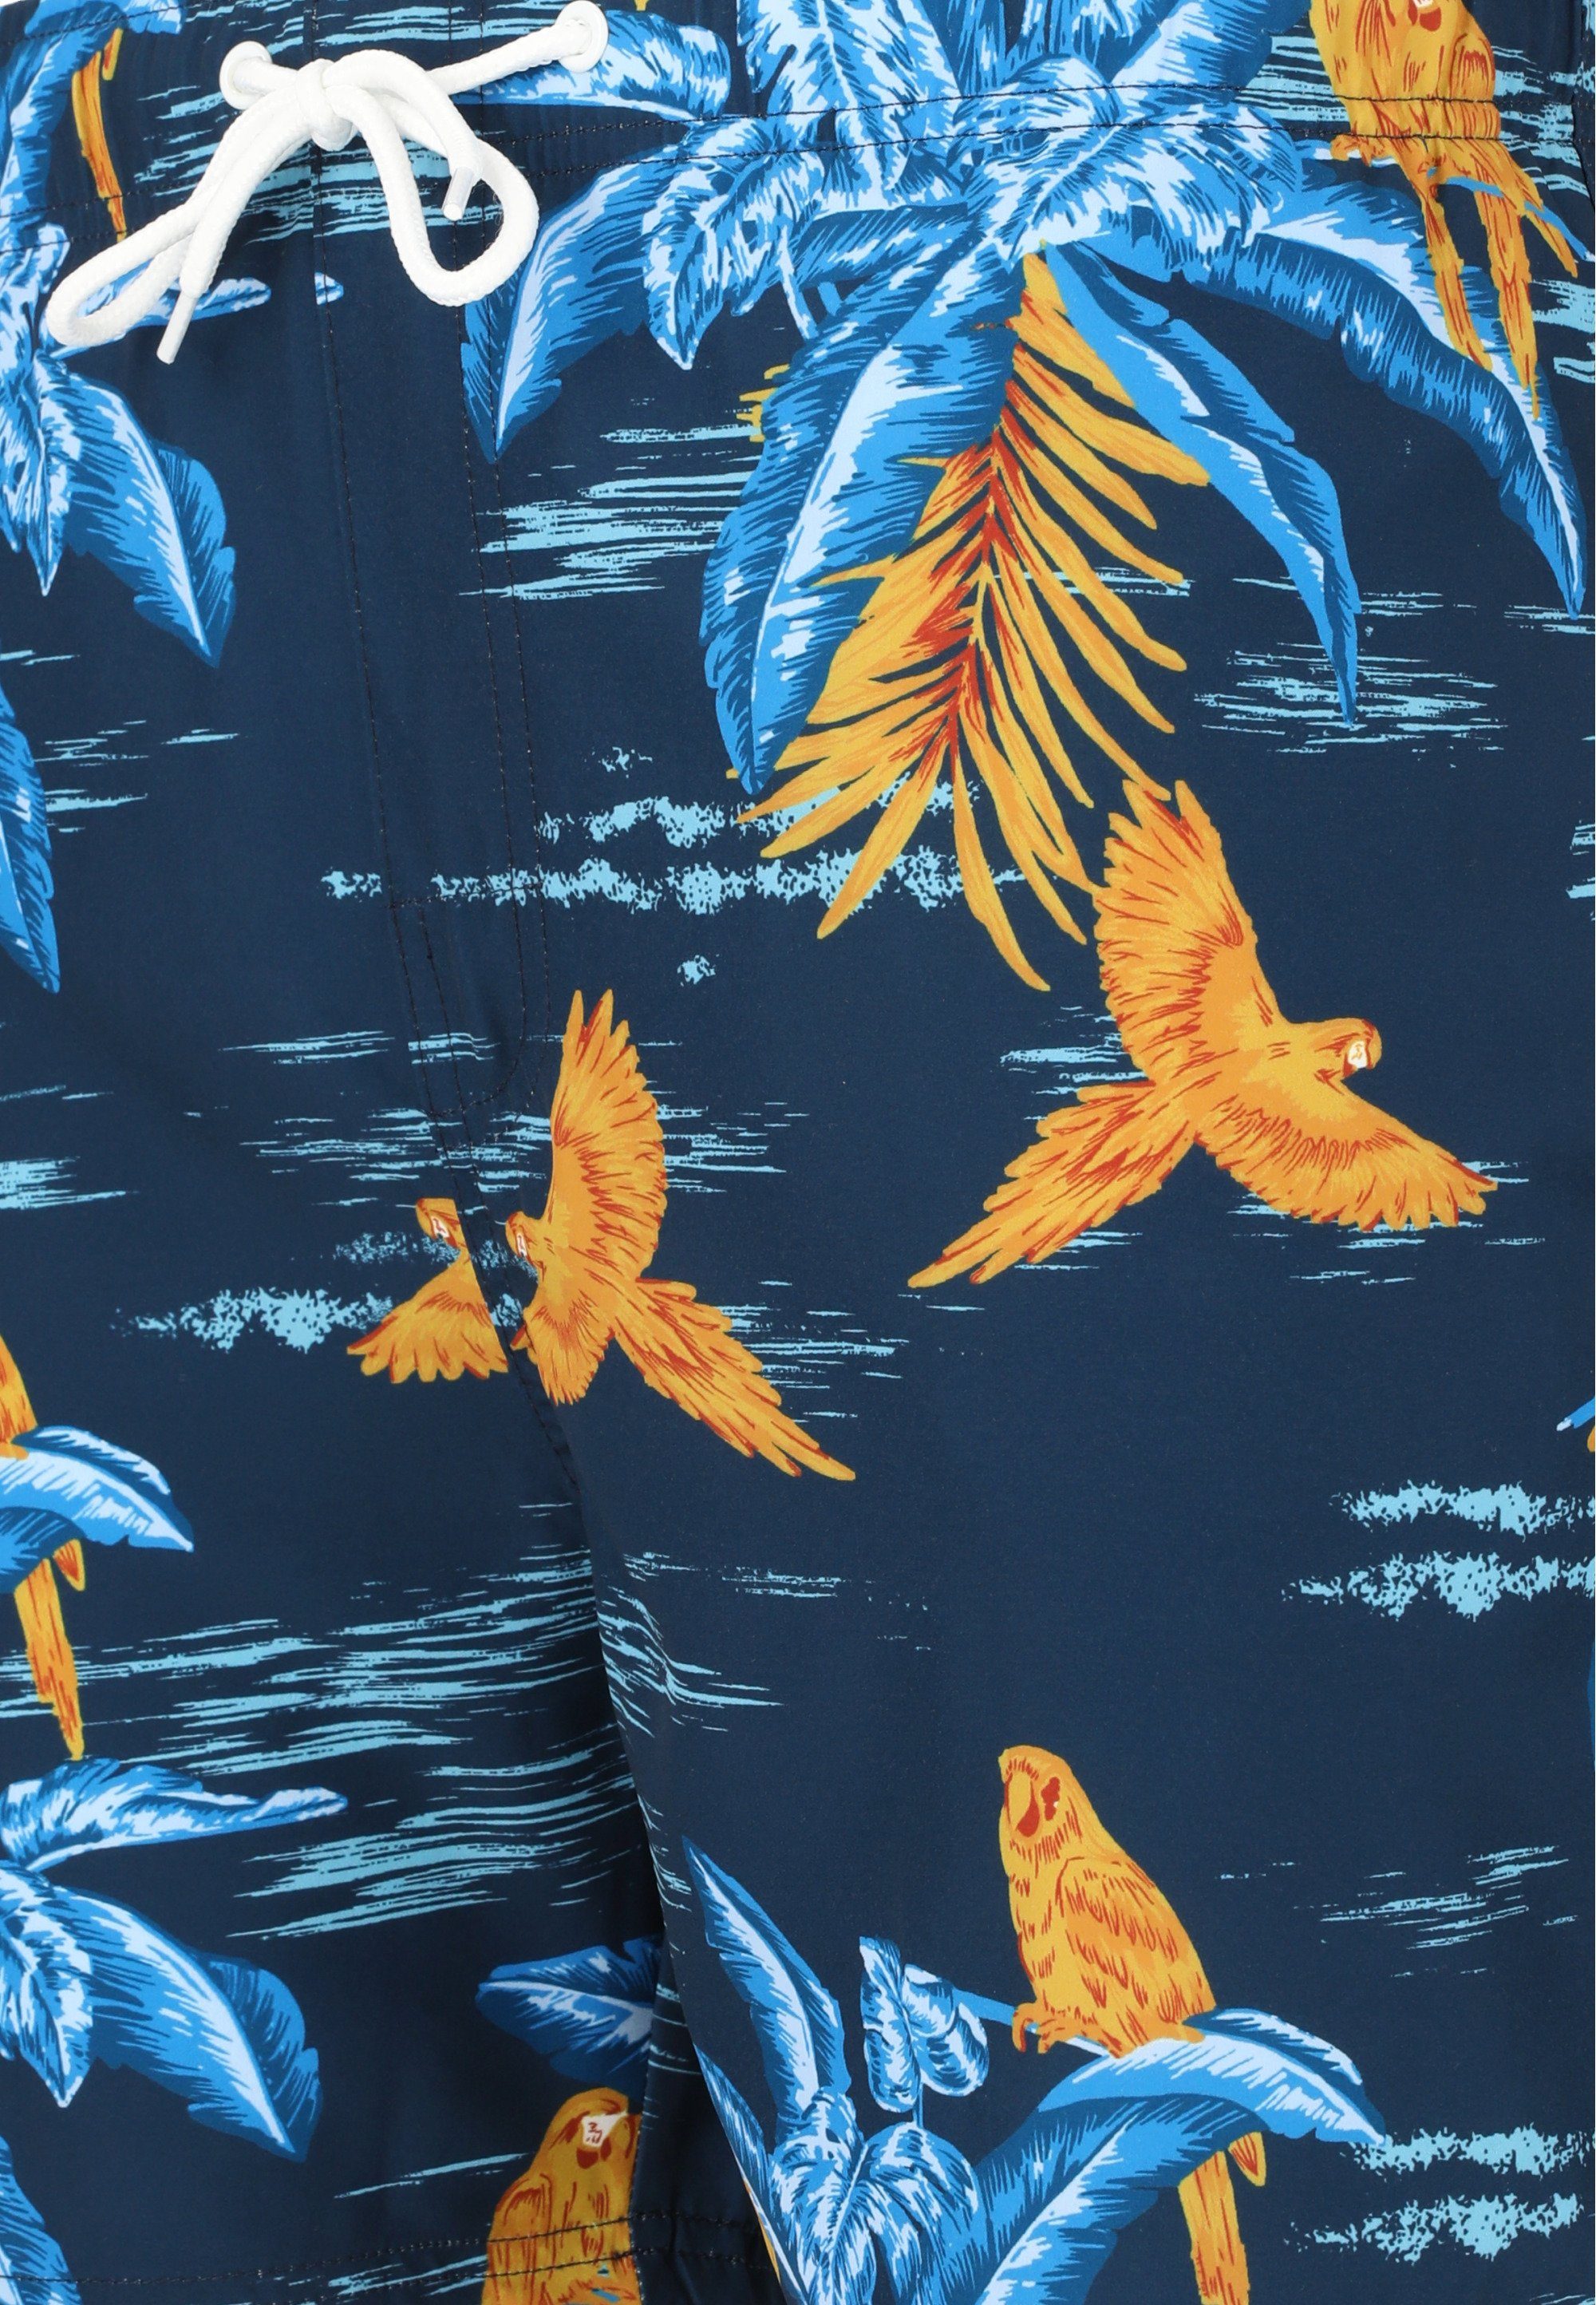 Badeshorts CRUZ blau-gelb mit Farell stylischem Print